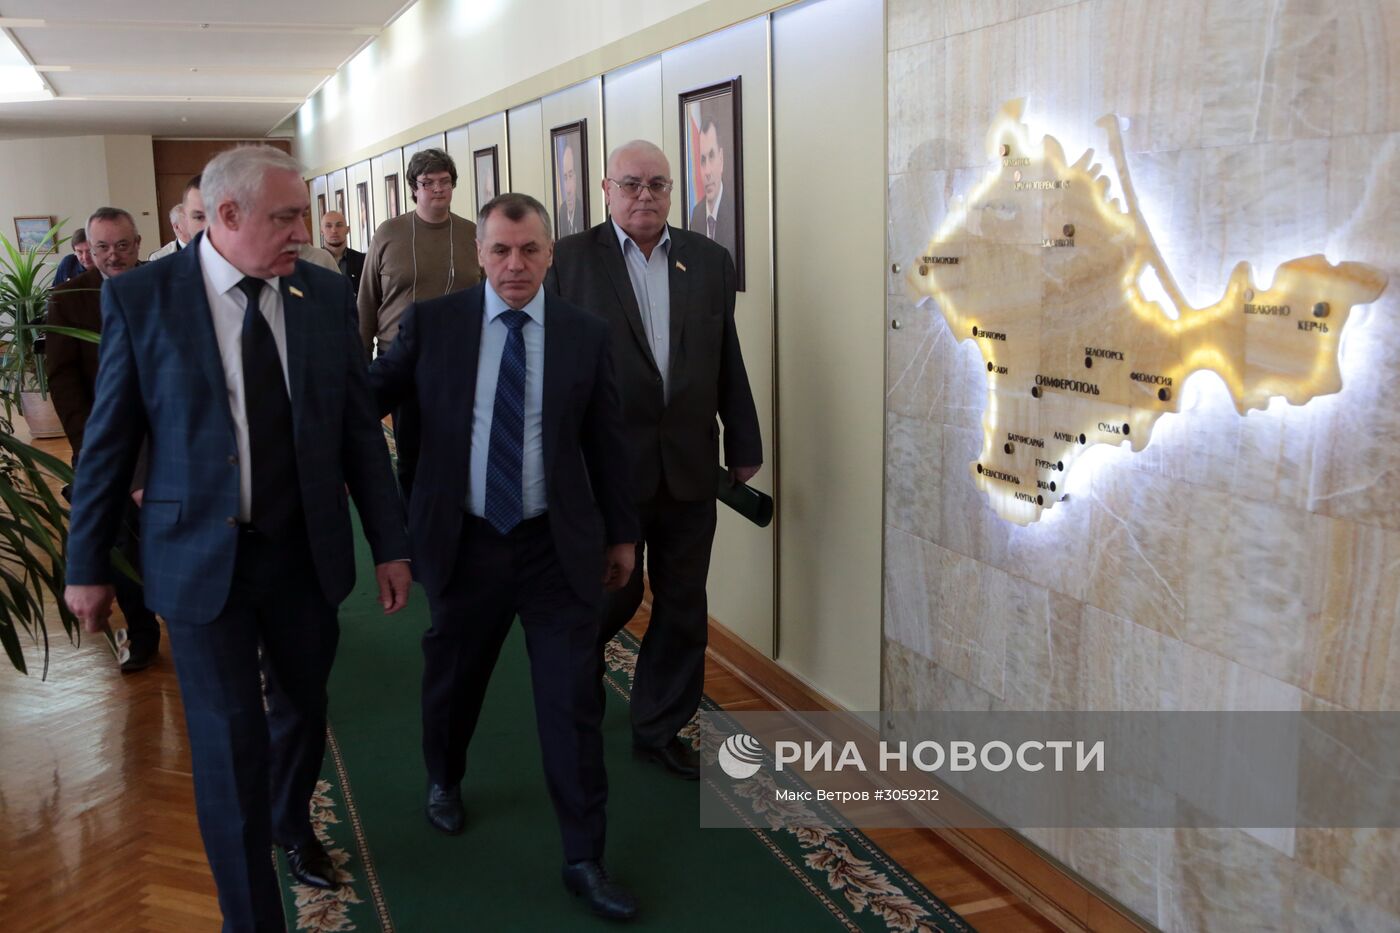 Прибытие делегации политиков и бизнесменов из Германии в Крым